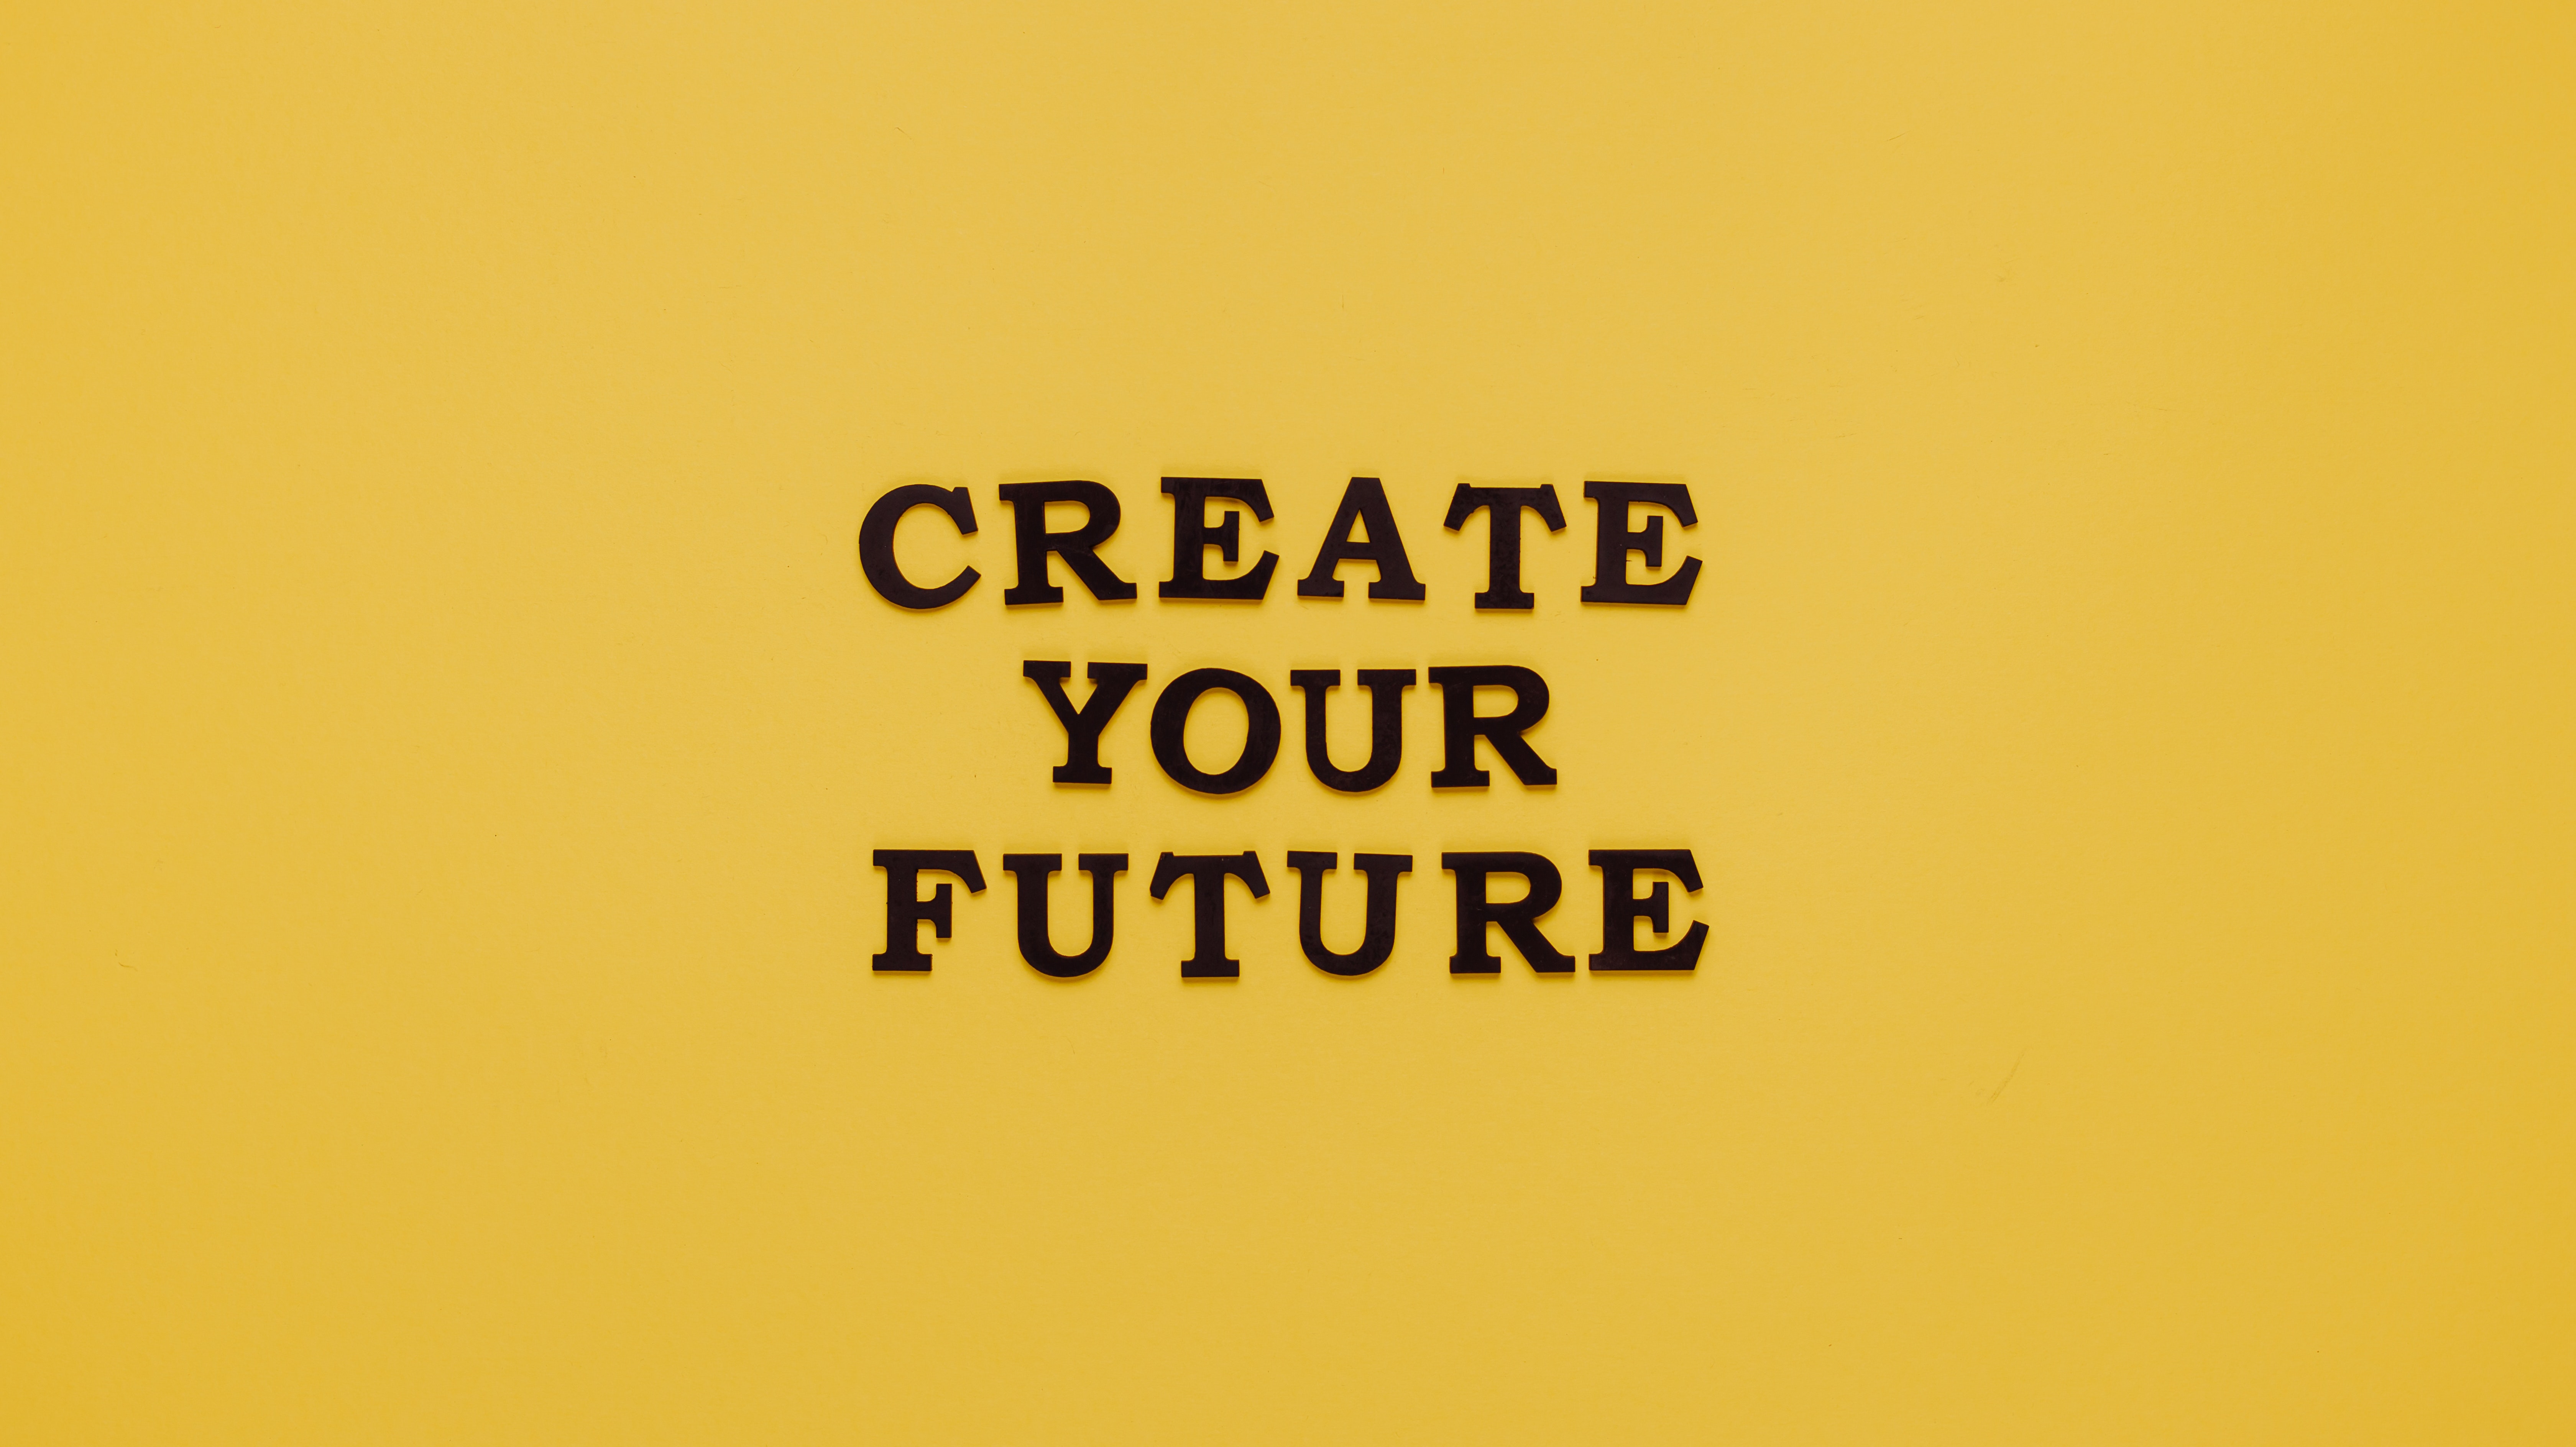 Create your future, schwarzer Text auf gelbem Grund